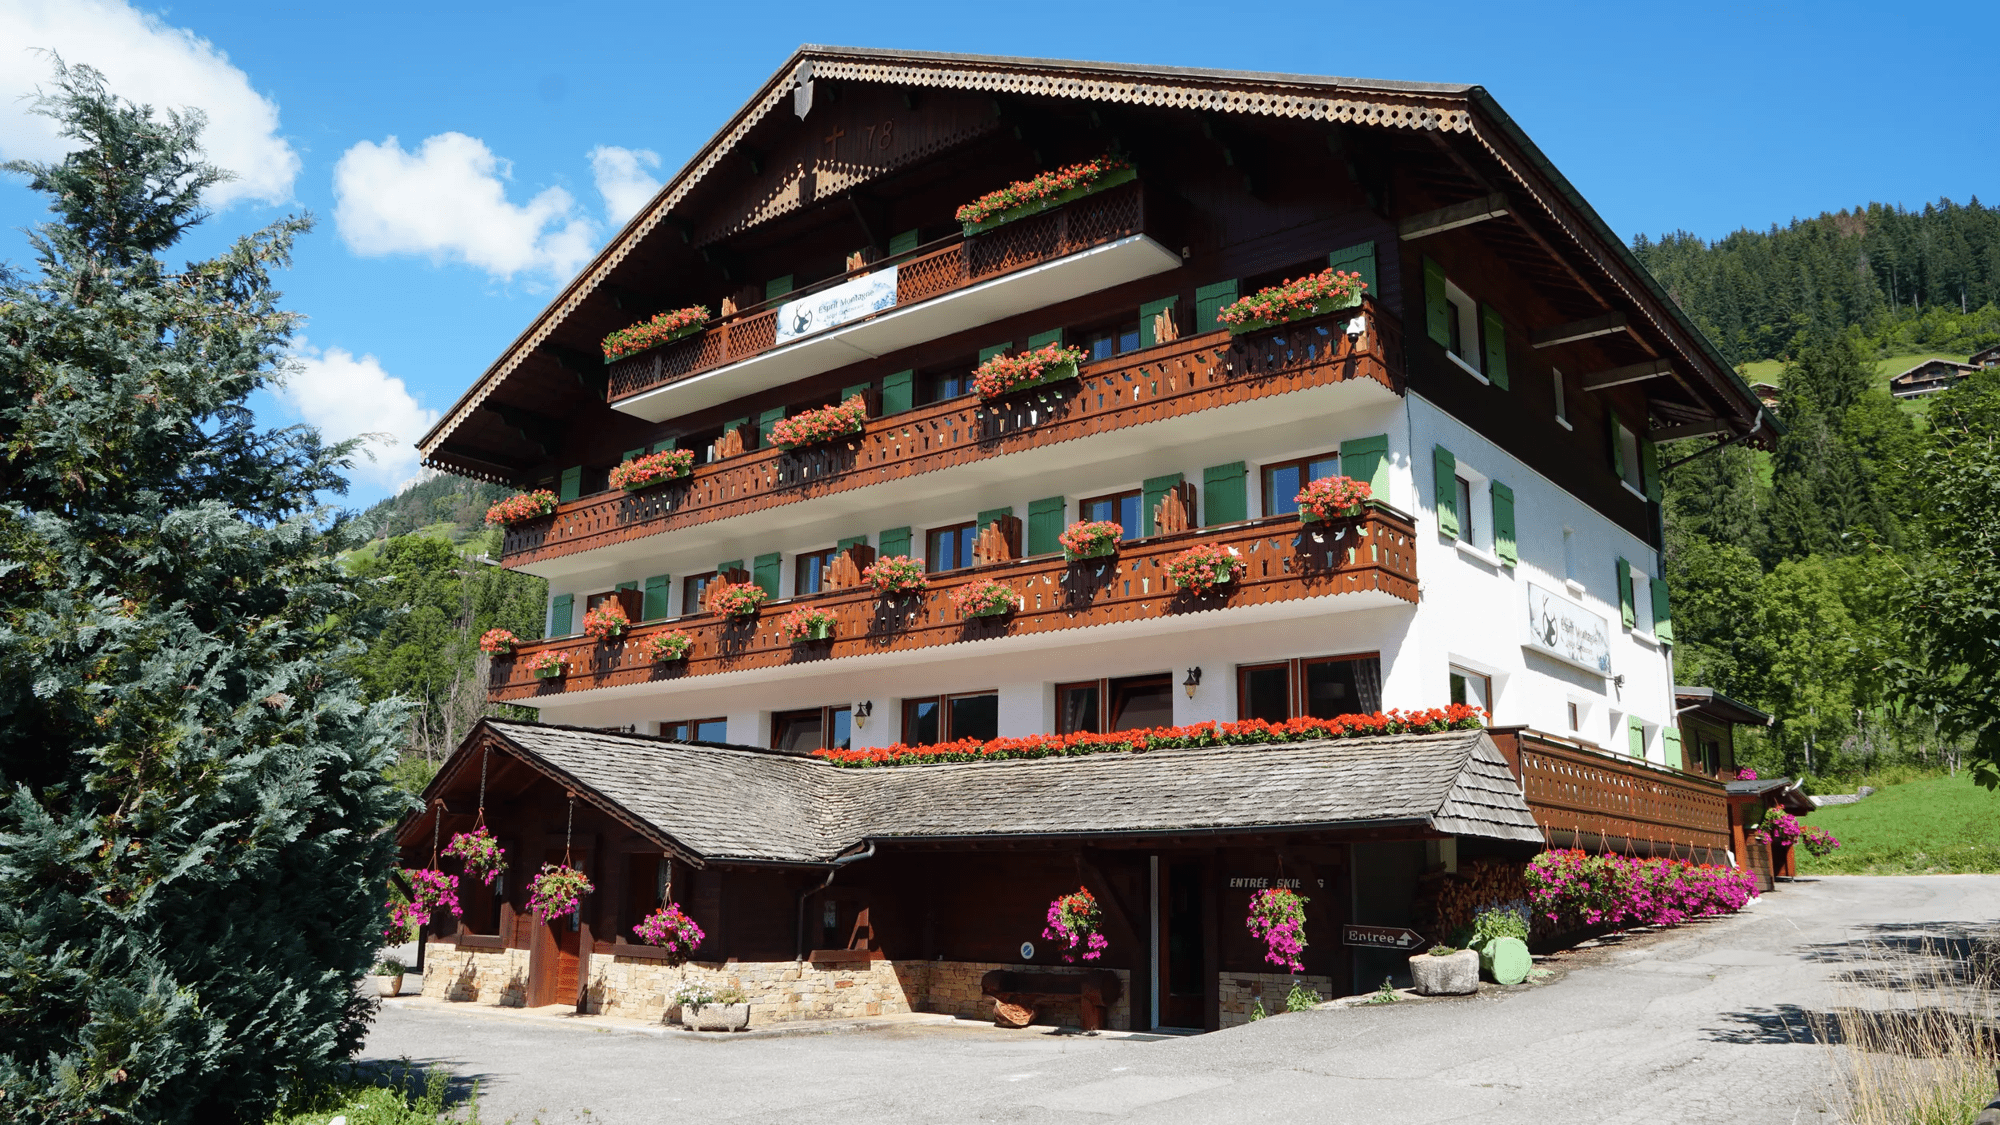 Vakantie 8-daagse autovakantie Franse Alpen - Hotel Esprit Montagne in La Chapelle-d'Abondance (Diversen, Frankrijk)